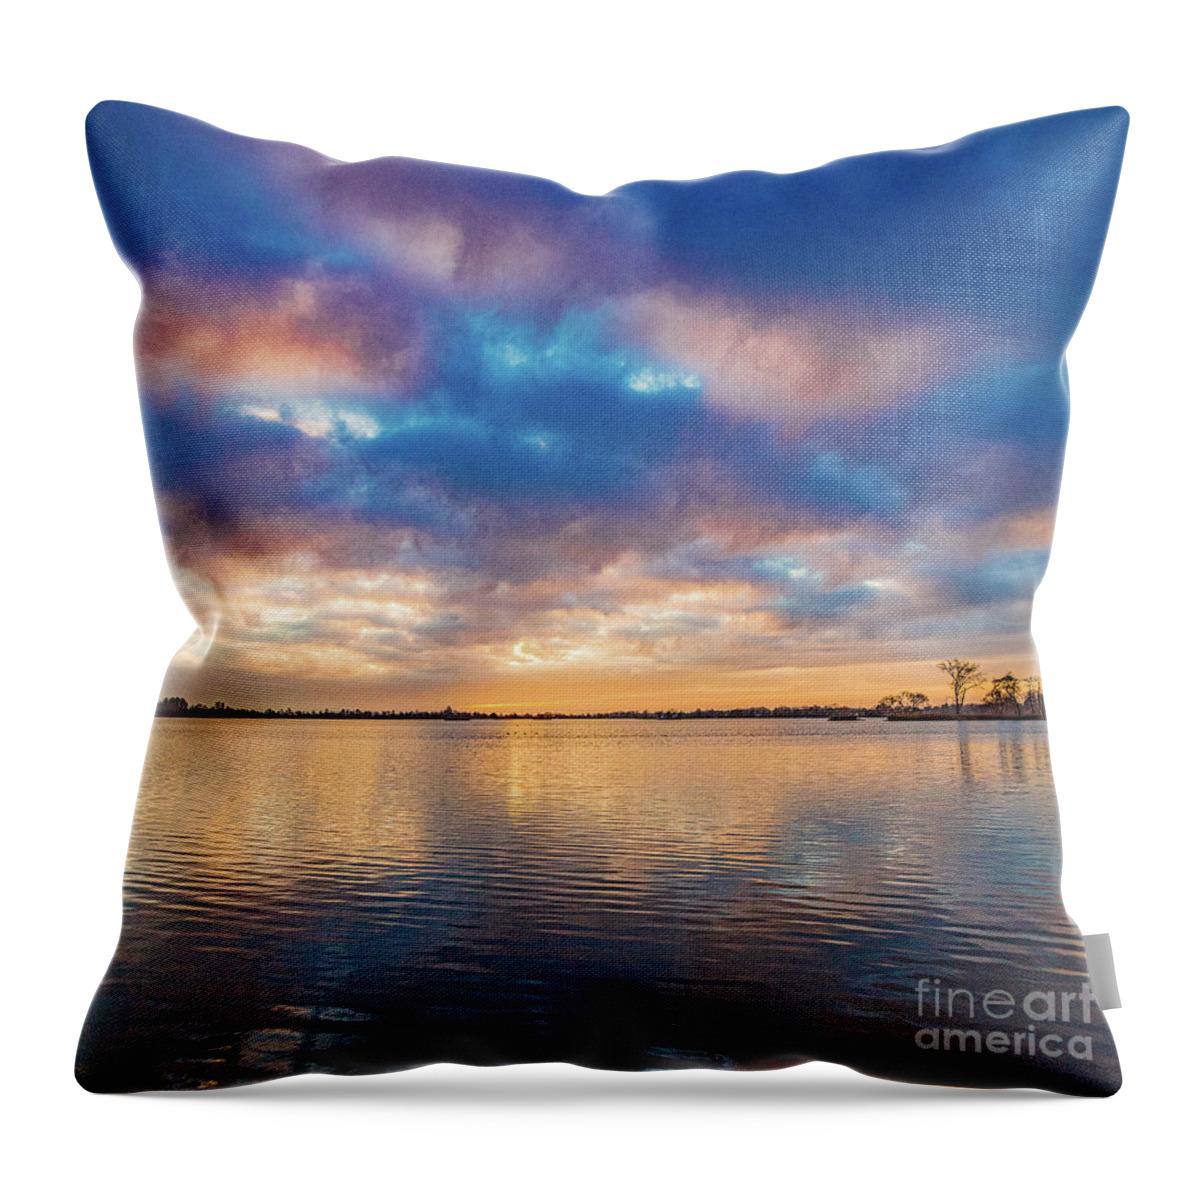 Elfhoevenplas Throw Pillow featuring the photograph Joyful dawn by Casper Cammeraat